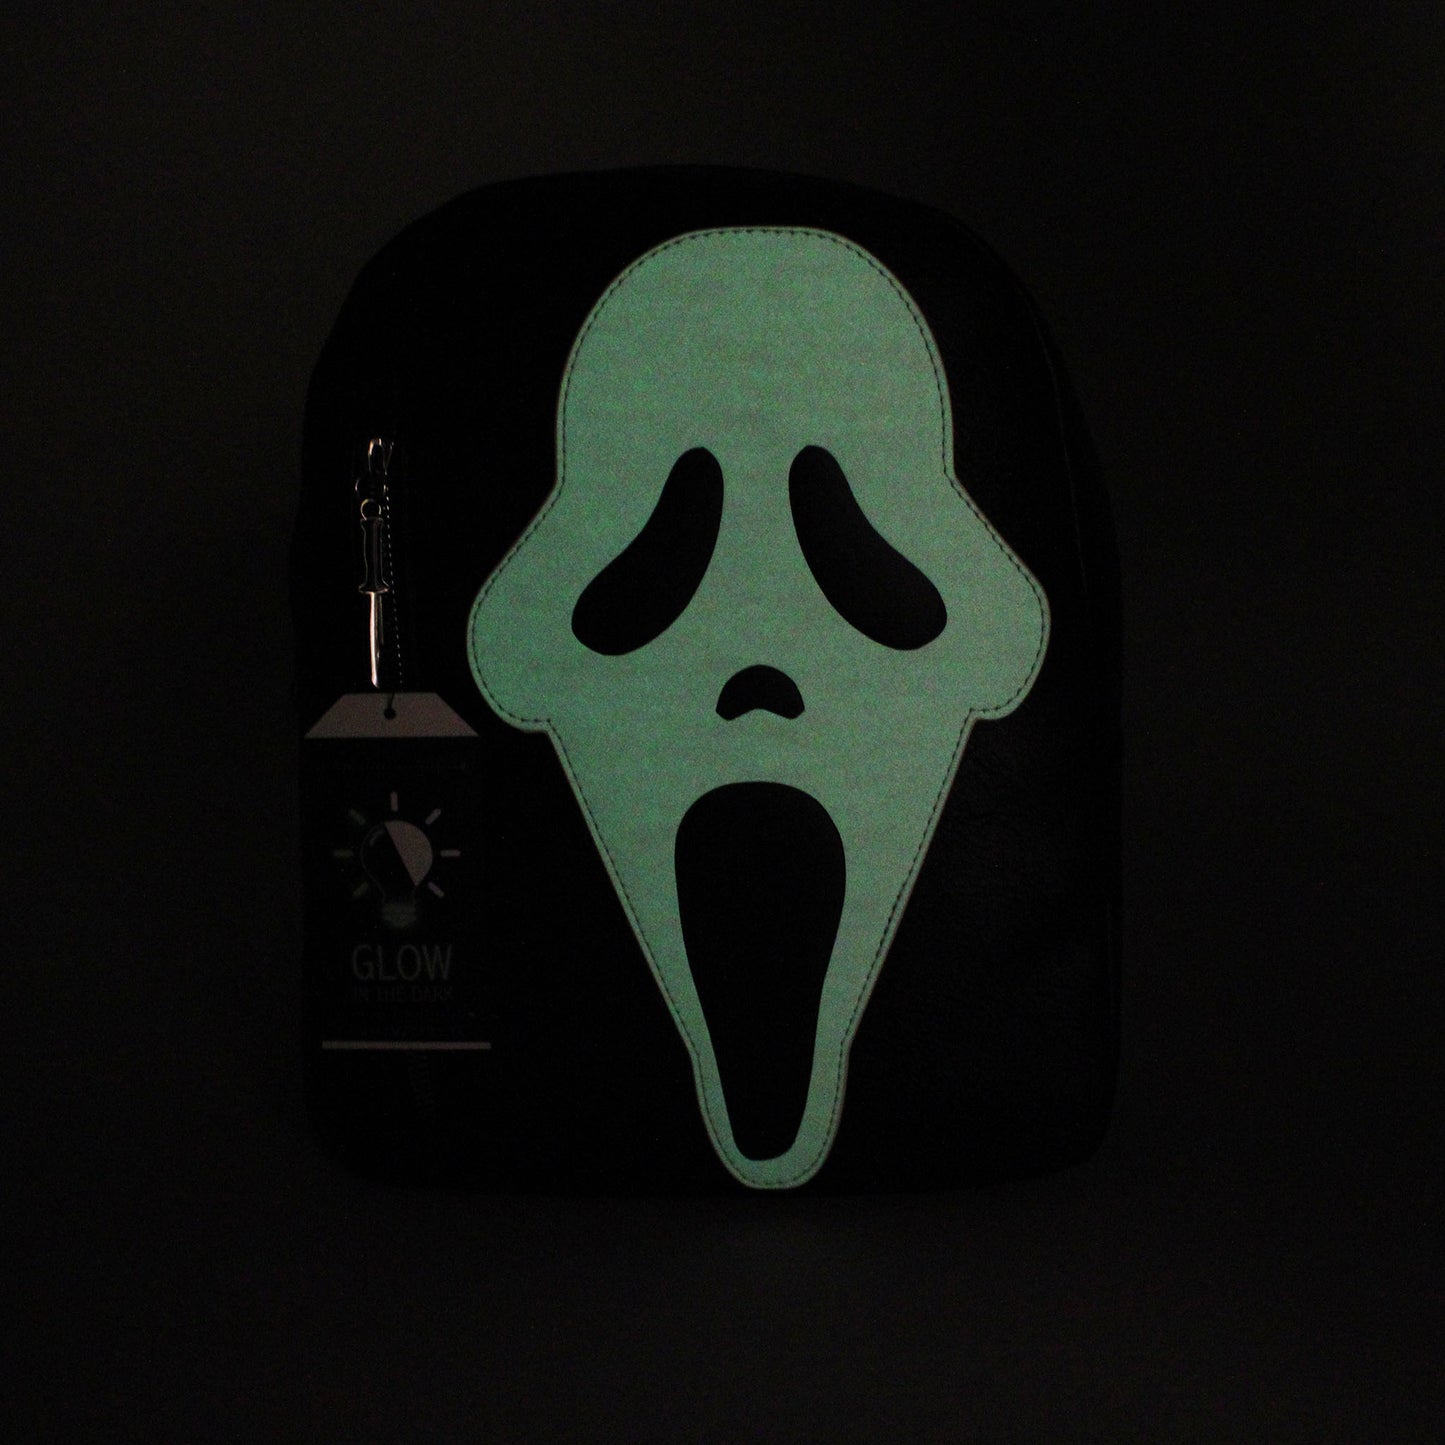 GhostFace (Scream) Glow-in-the-Dark Mini Backpack